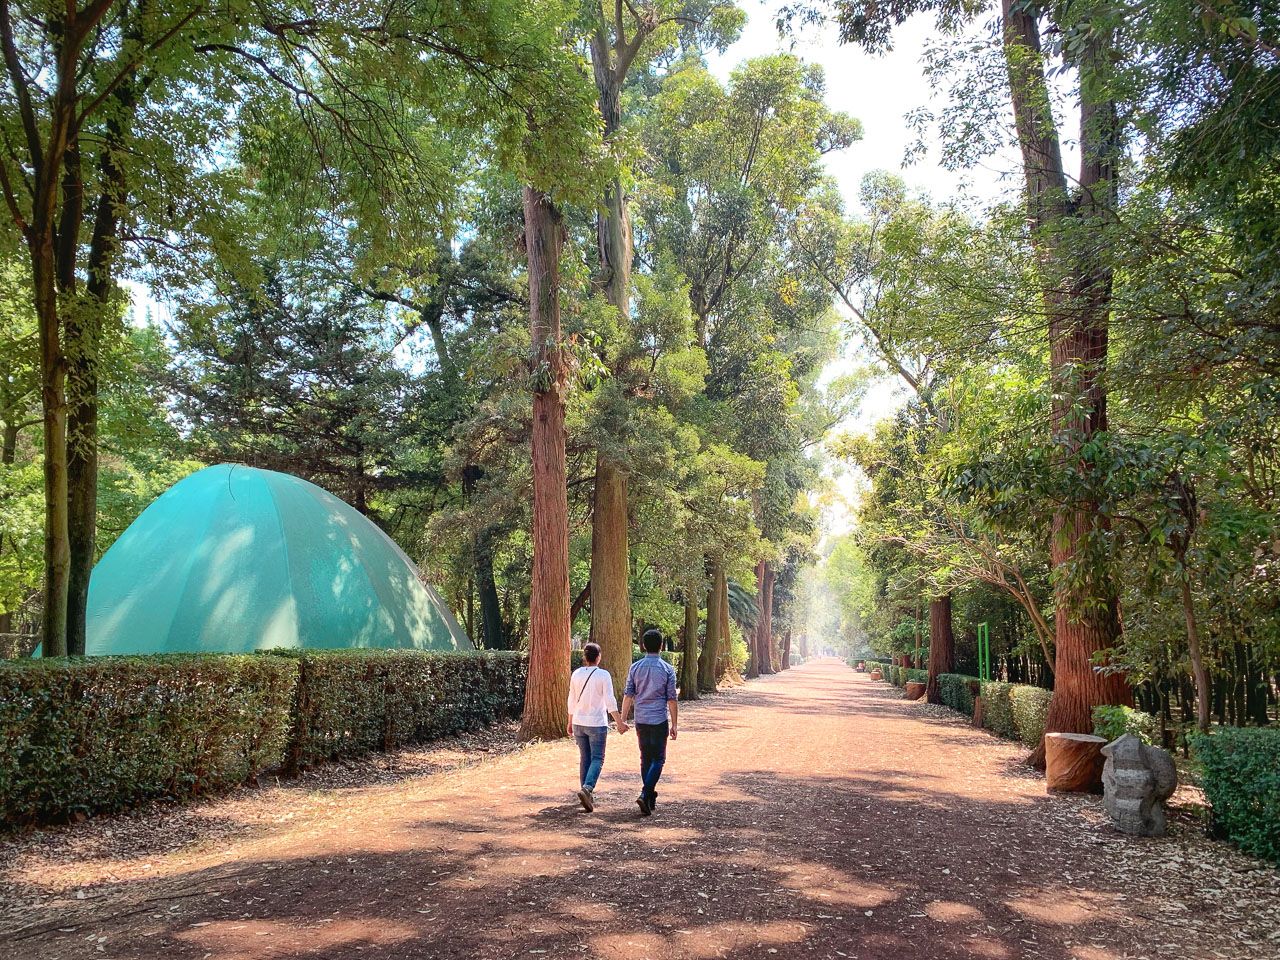  Interior de un parque en el cual el camino es de color rojo con pequeñas piedras,  al extremo de la fotografía se encuentran árboles dando ilusión de perspectiva,  además de una pareja caminando 

                        